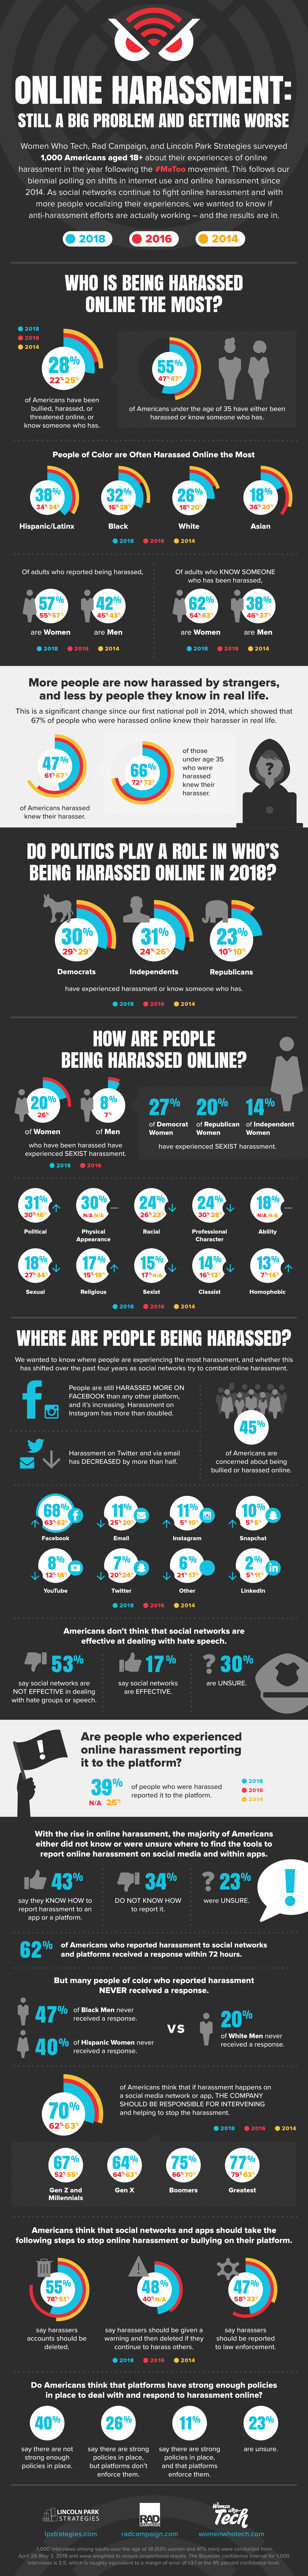 Online Harassment 2018 Data